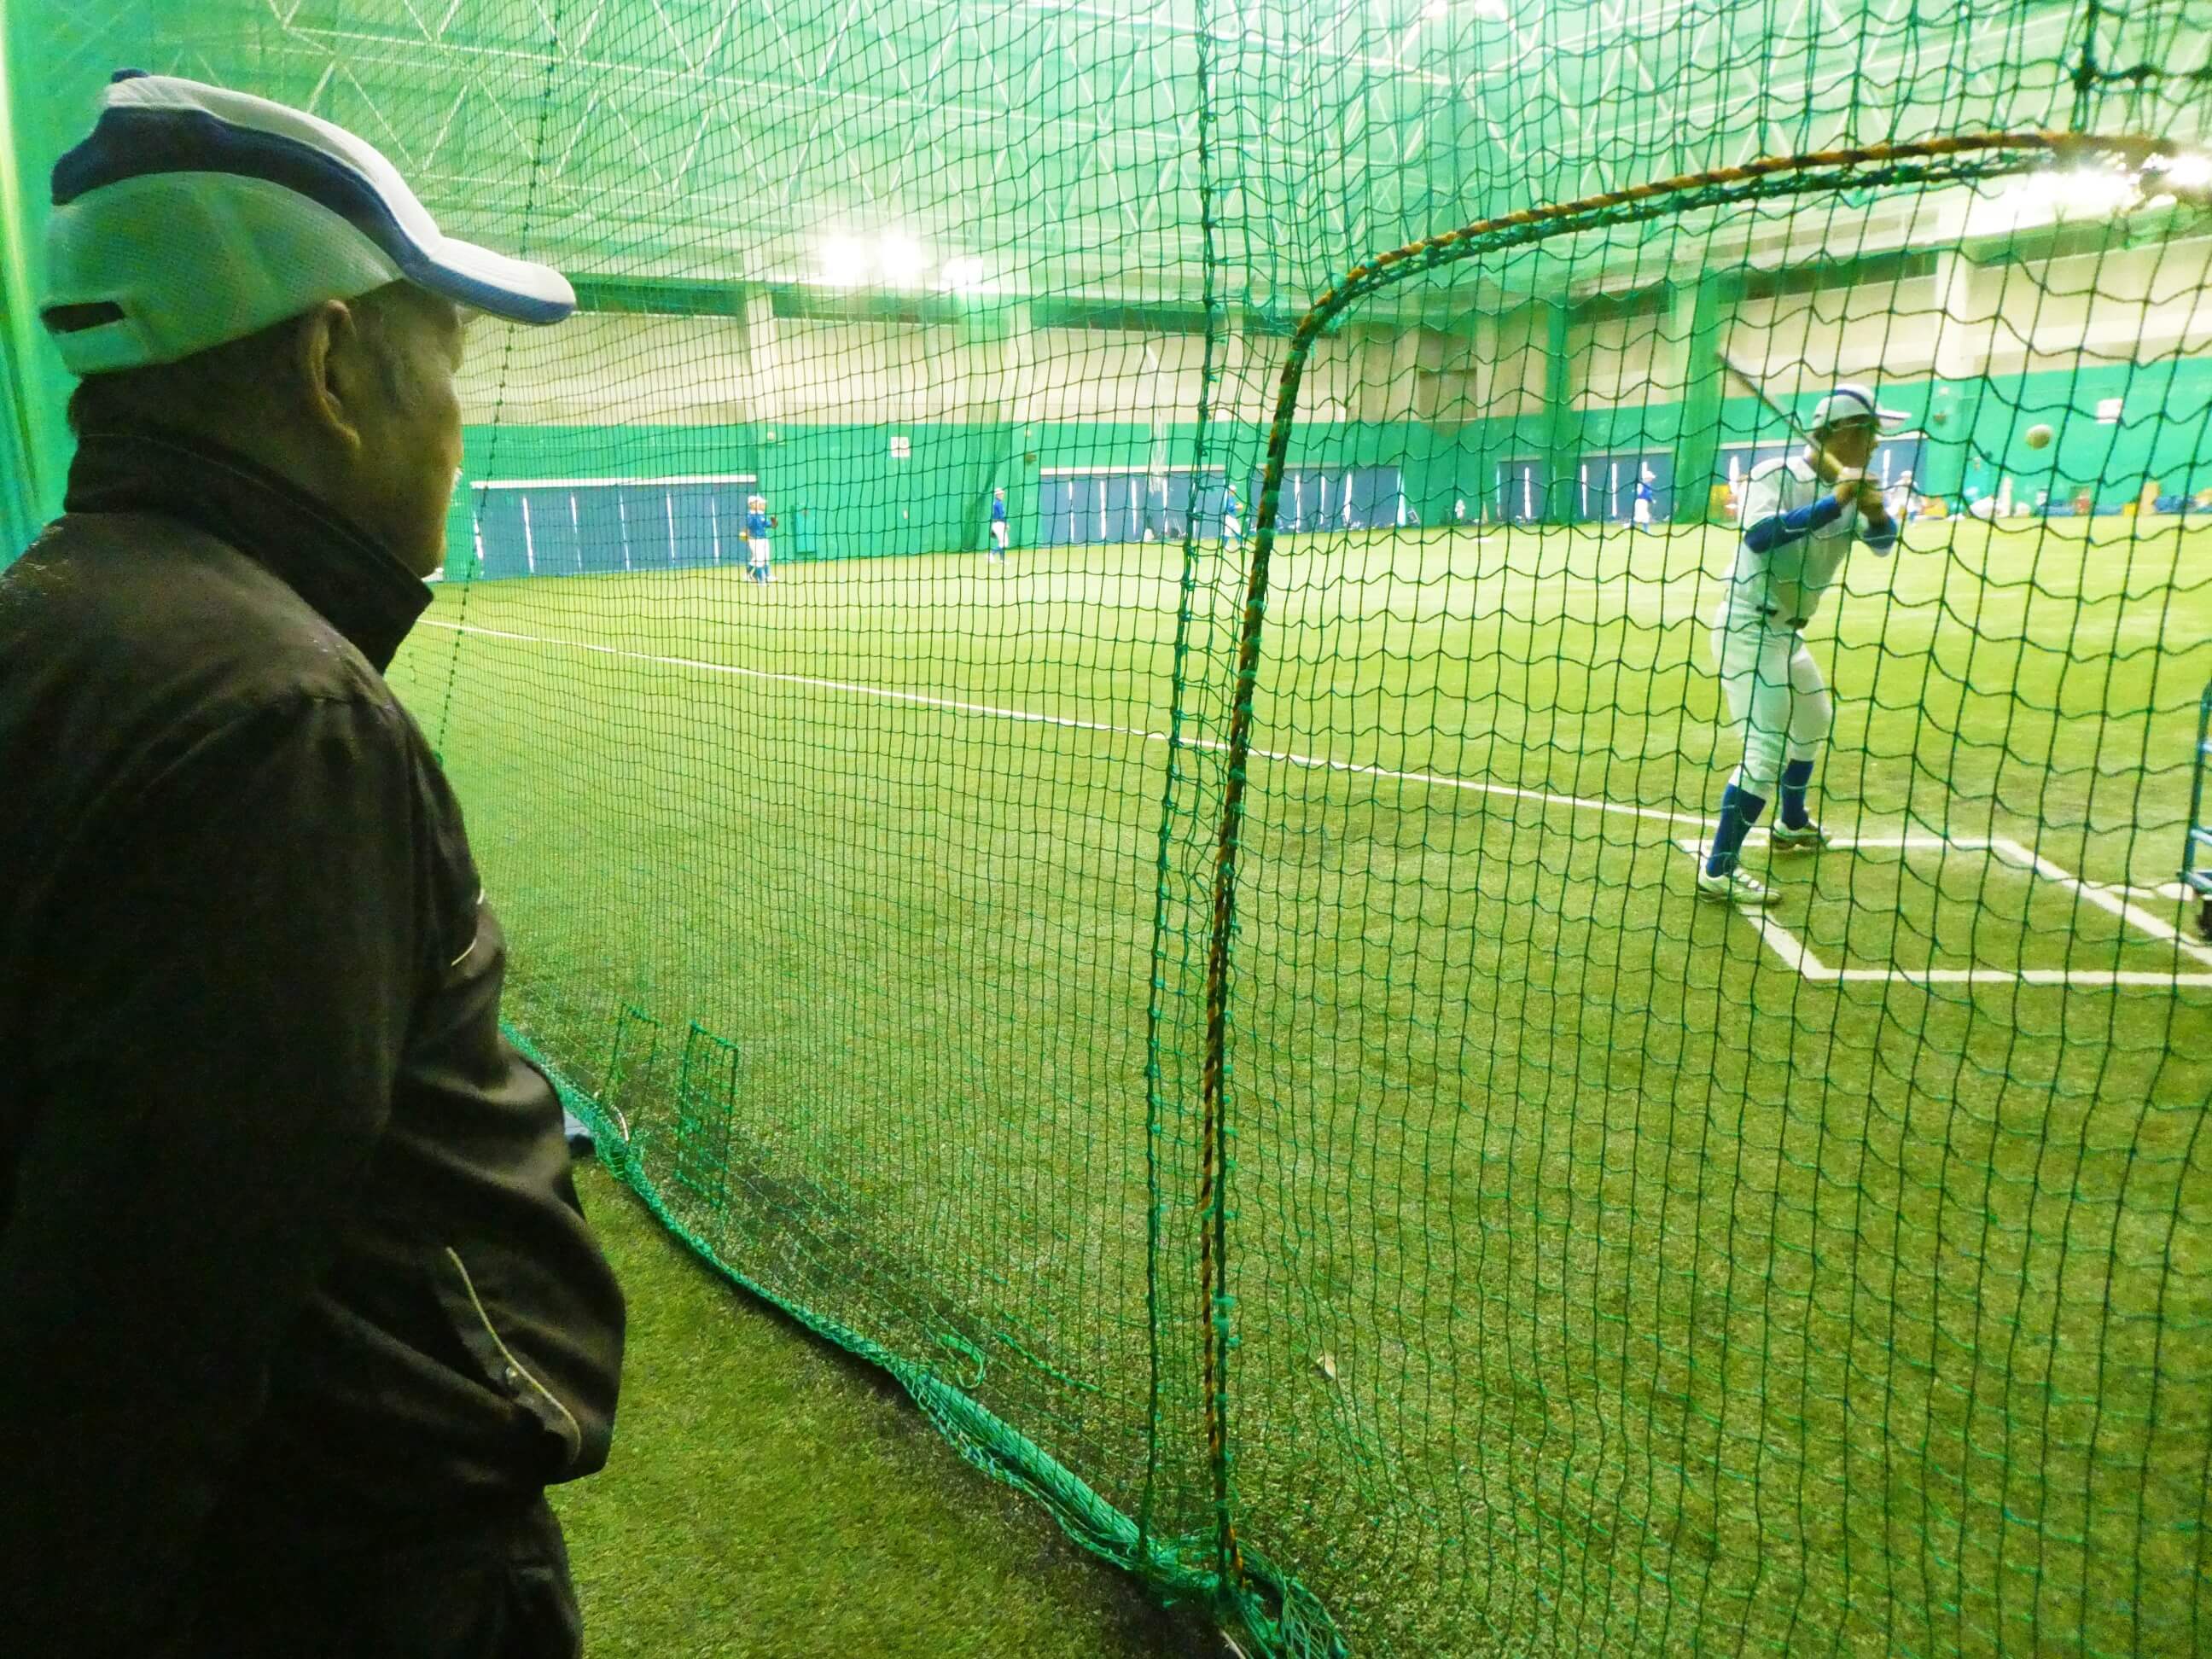 奄美にある名瀬運動公園の屋内競技場で野球の練習中